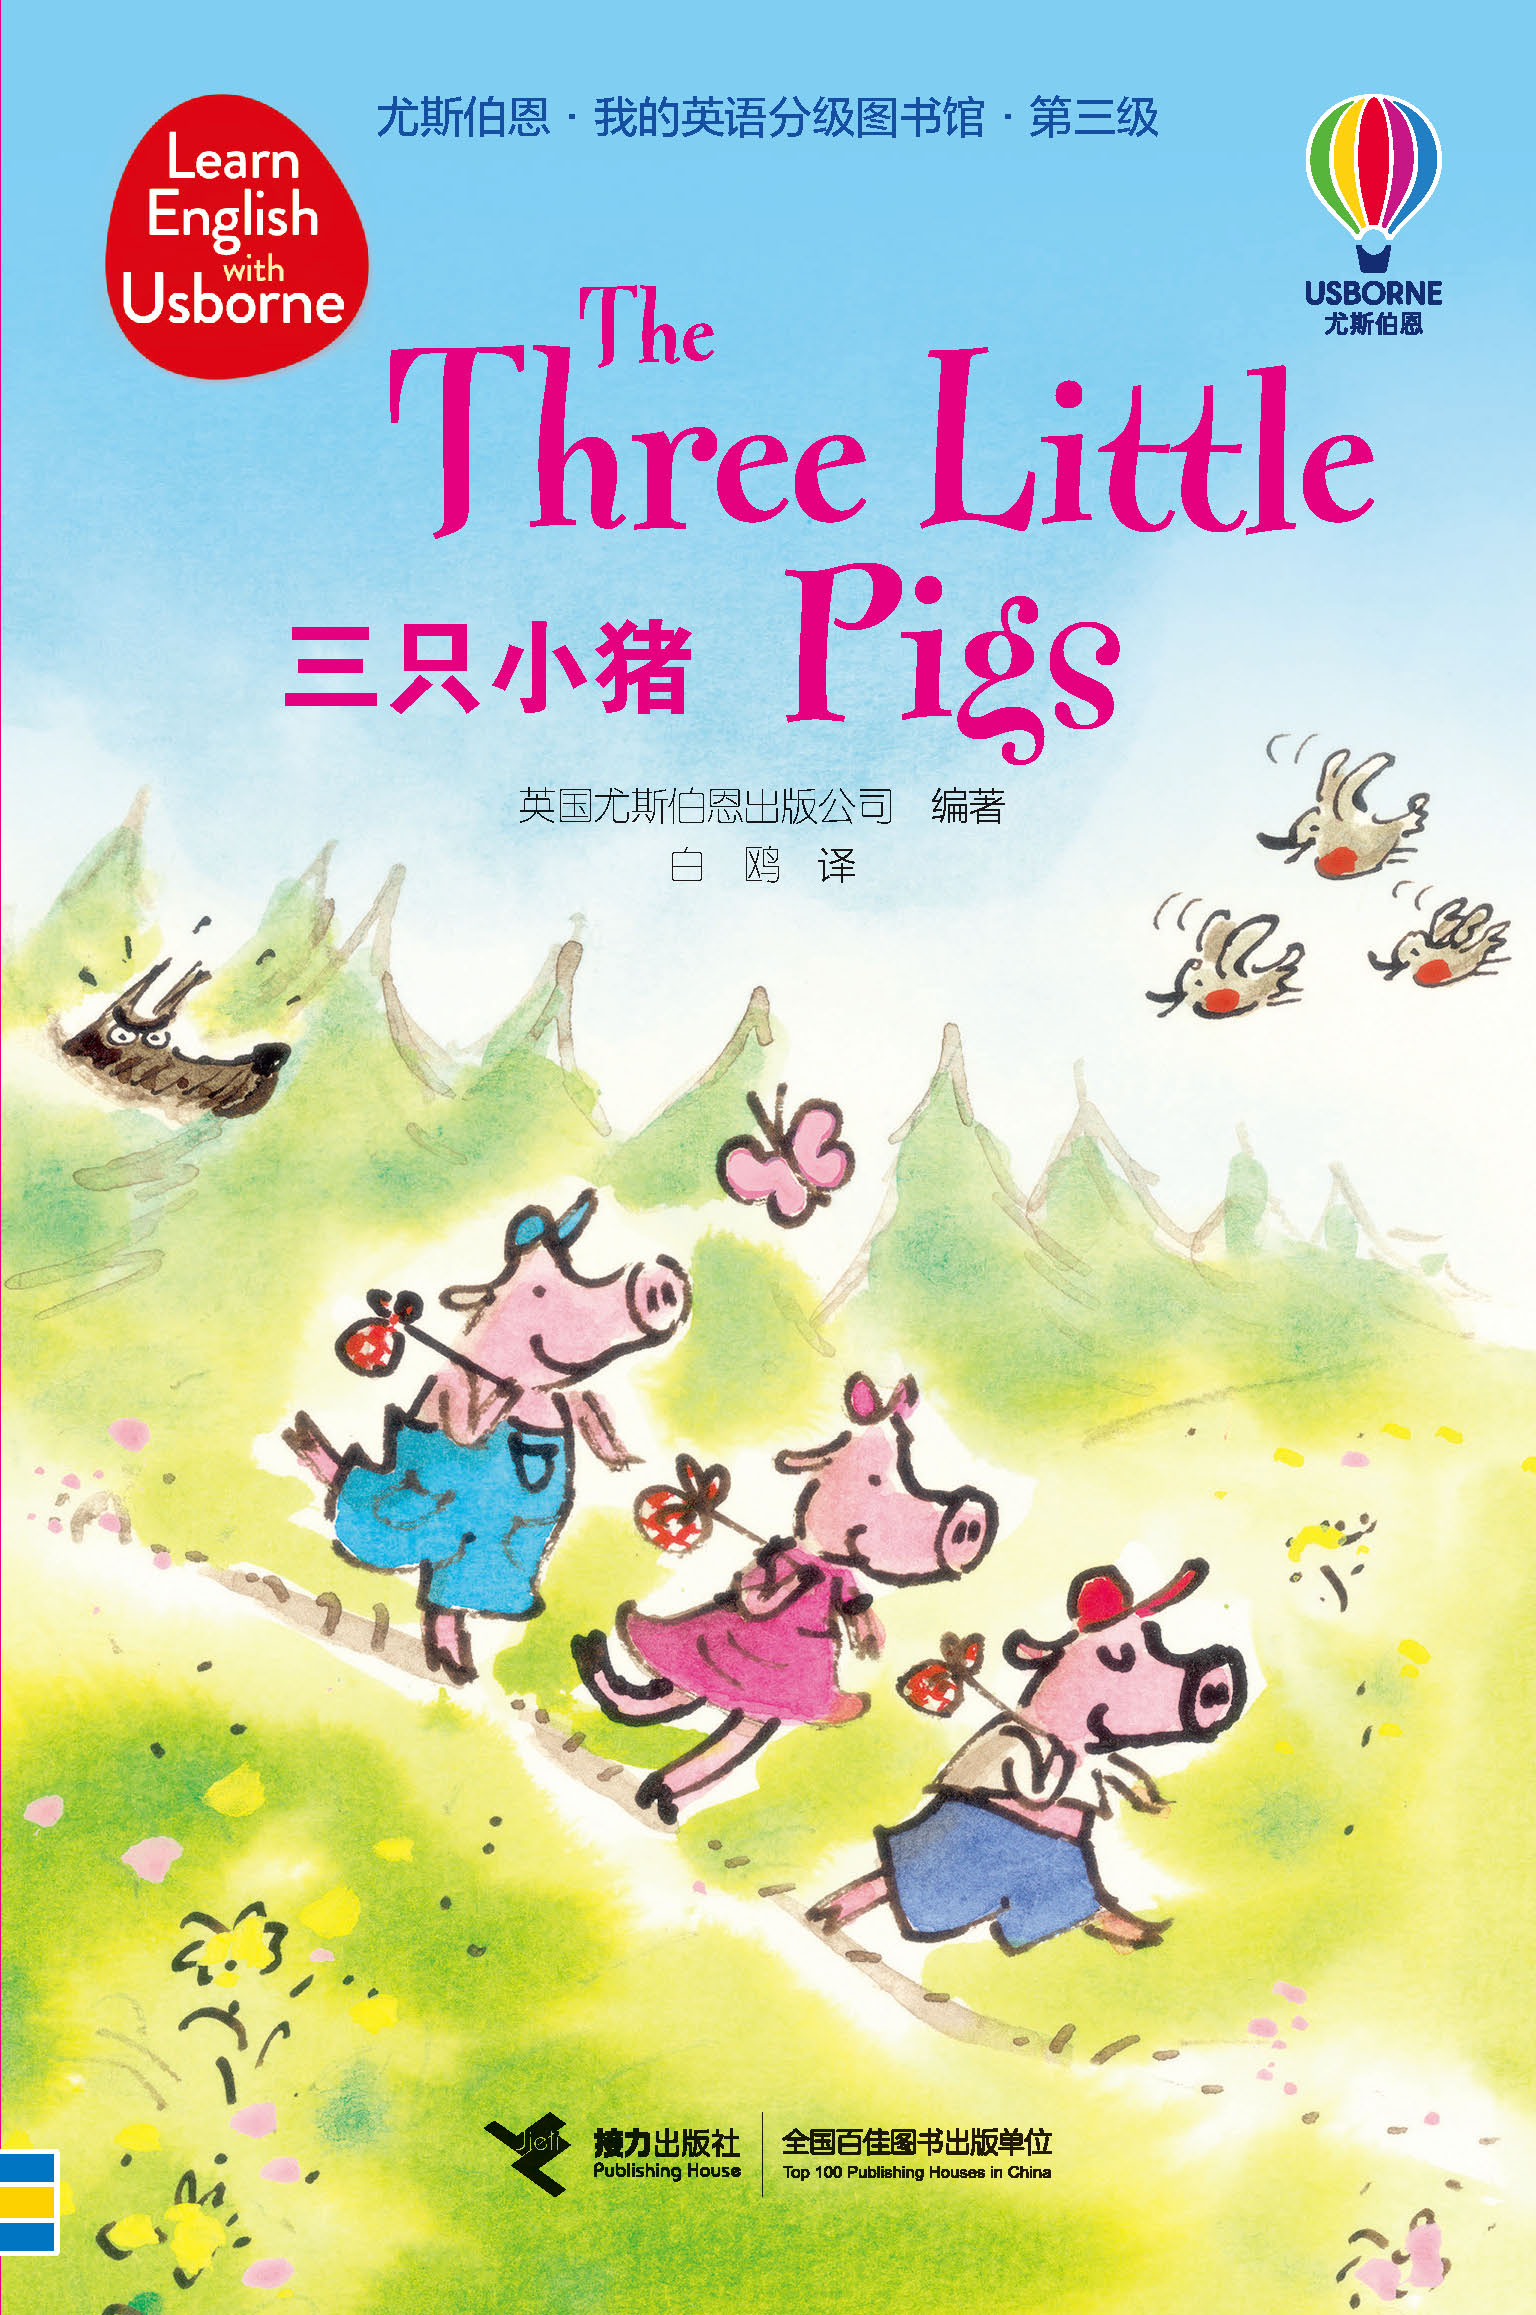 尤斯伯恩·我的英语分级图书馆·第三级·三只小猪